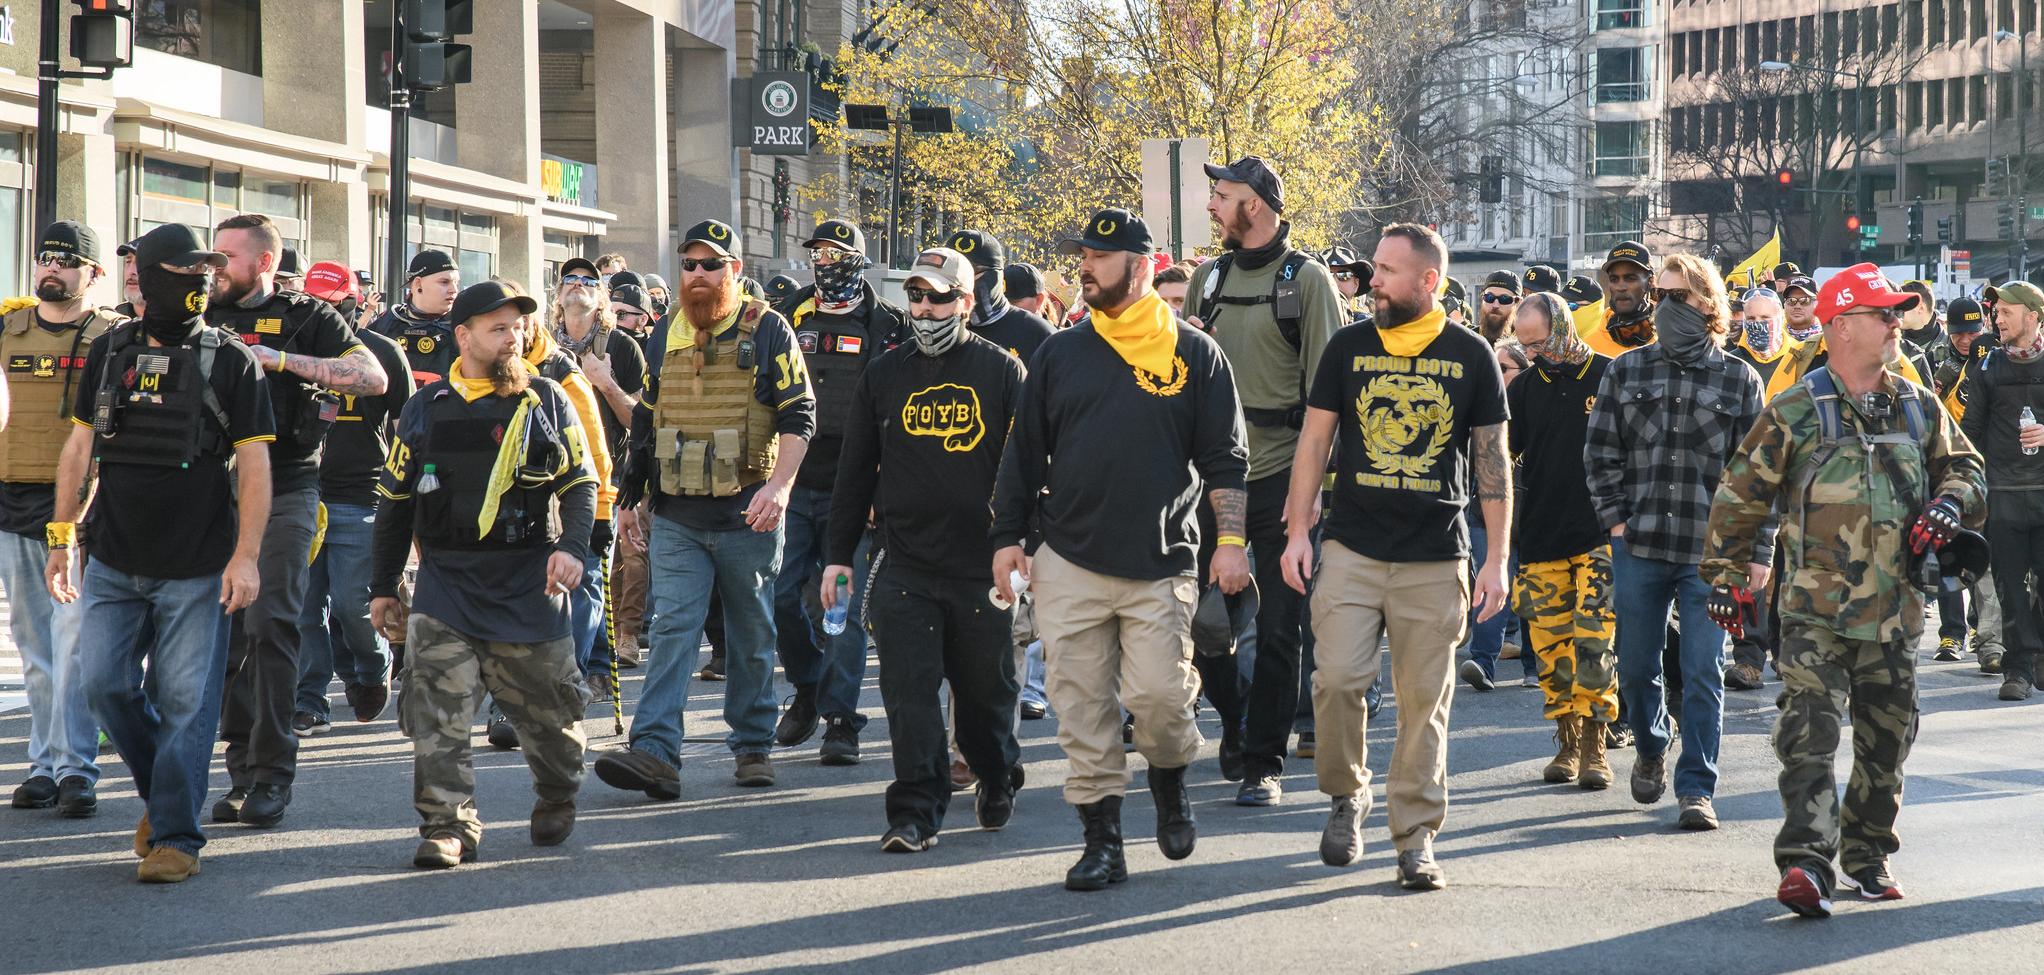 A group of men, in Proud Boys gear walking on a street.